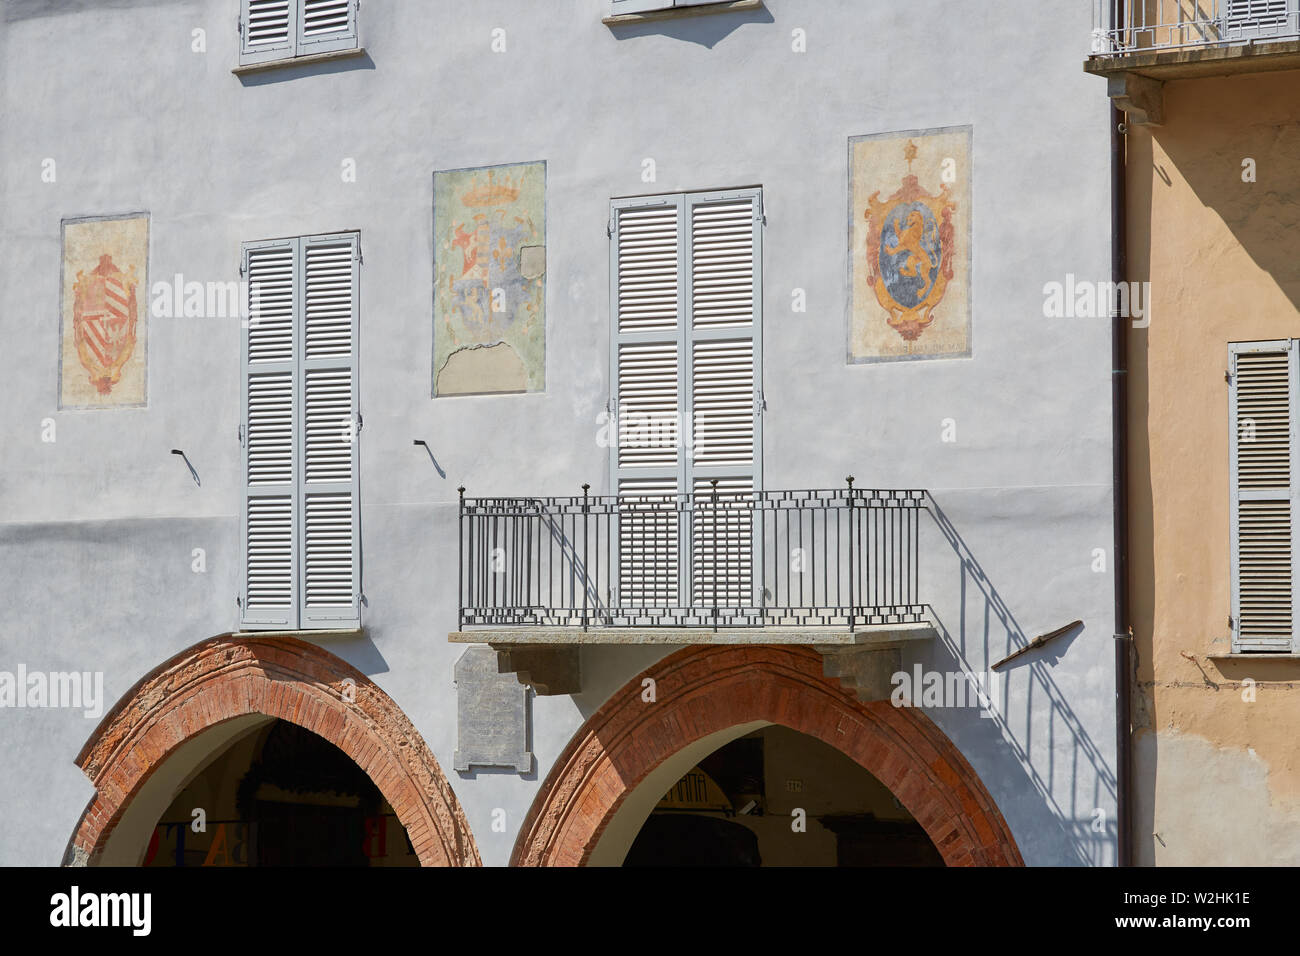 MONDOVI, Italia - 18 de agosto de 2016: azul pálido fachada con frescos y arco de ladrillo rojo en un día soleado de verano en Mondovi, Italia Foto de stock